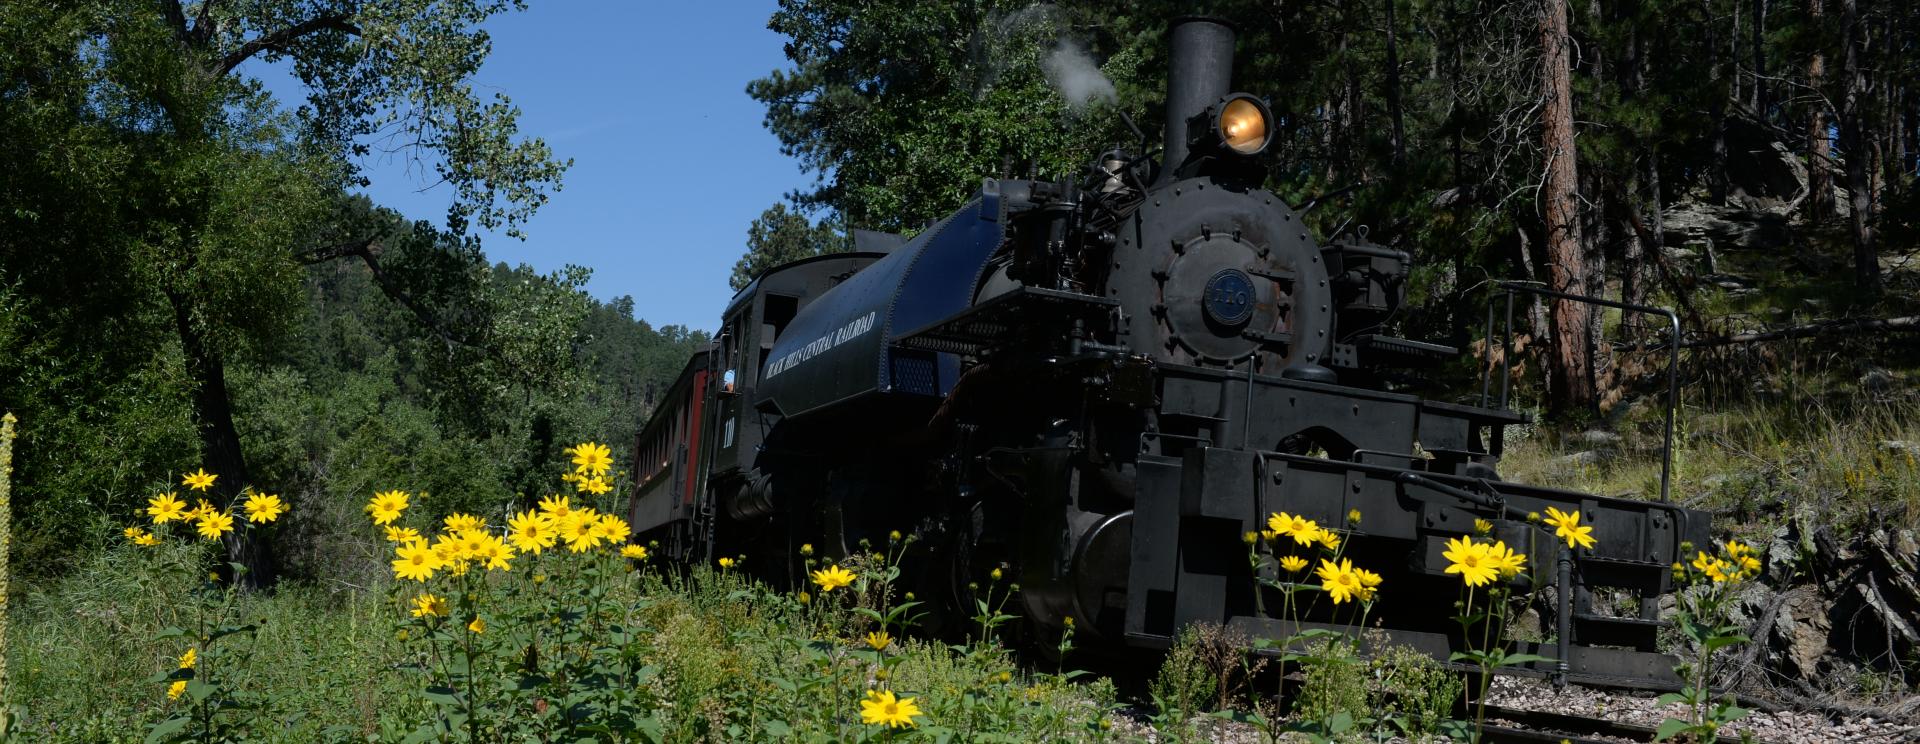 1880 Train - Black Hills Central Railroad